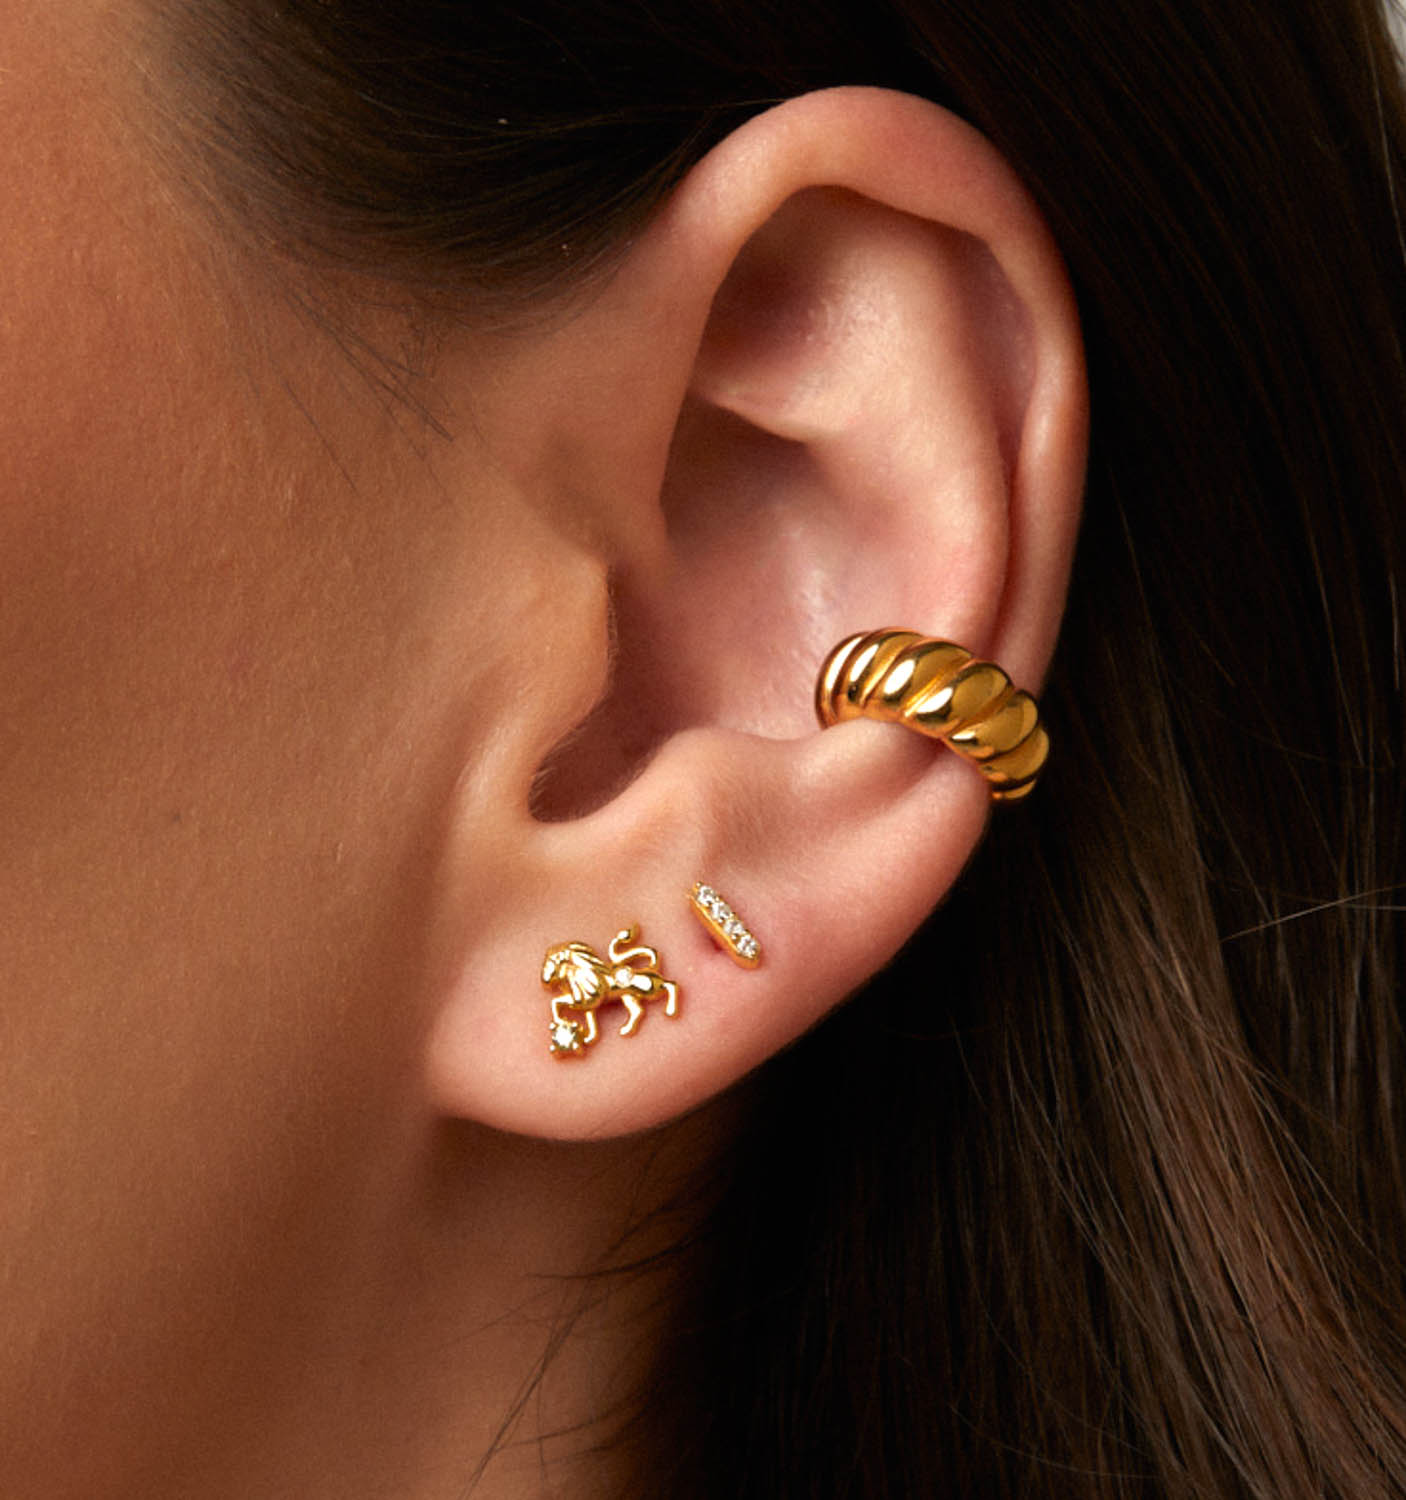 Model wearing leo earrings, stud earrings, and ear cuff